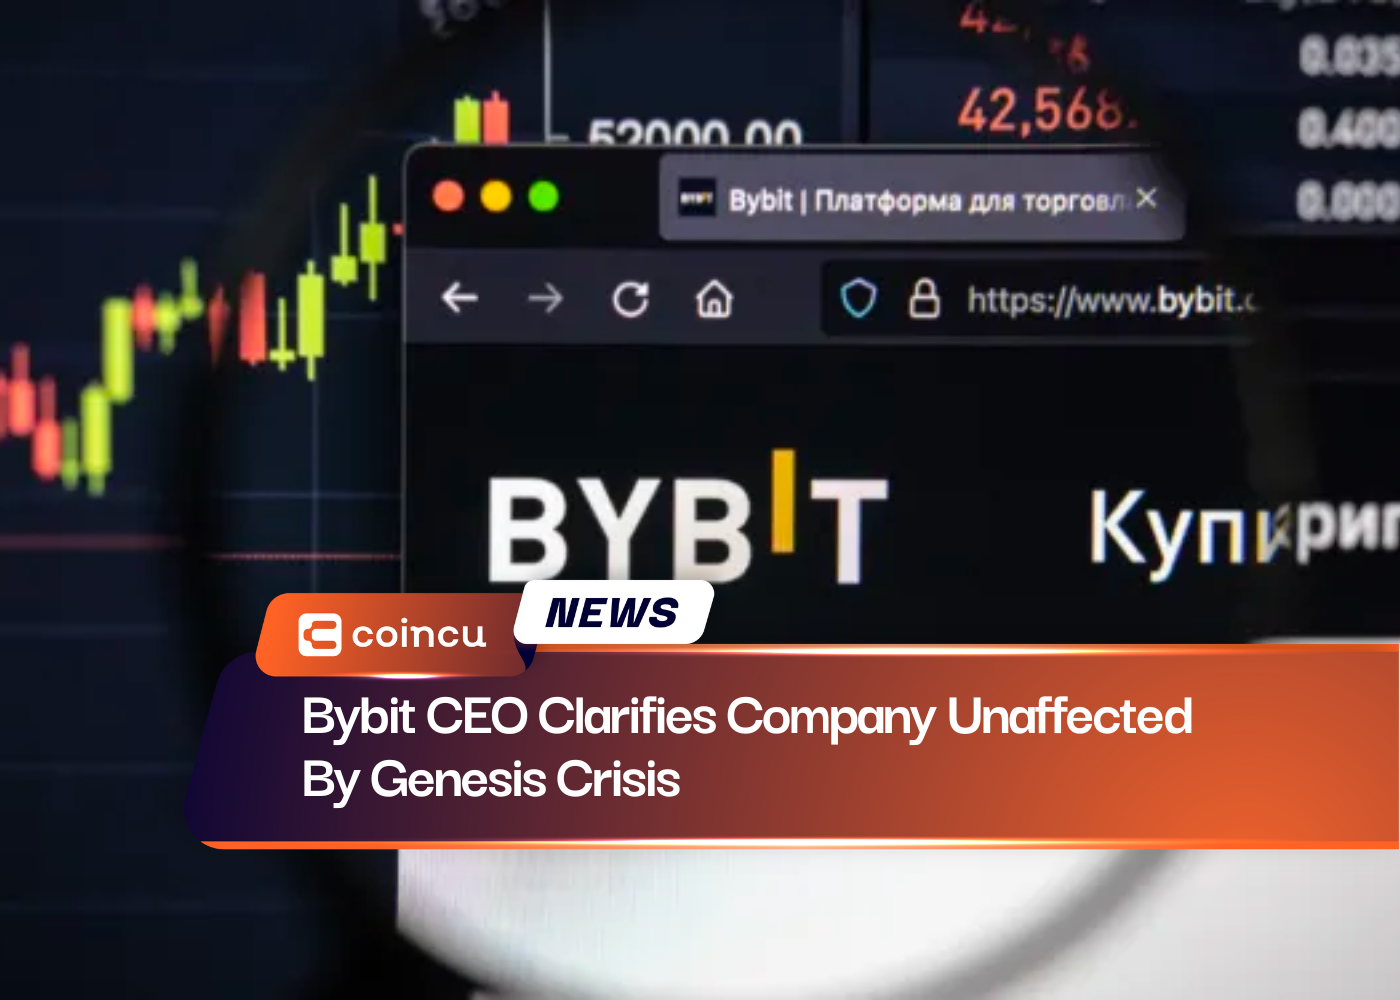 الرئيس التنفيذي لشركة Bybit يوضح أن الشركة لم تتأثر بأزمة Genesis